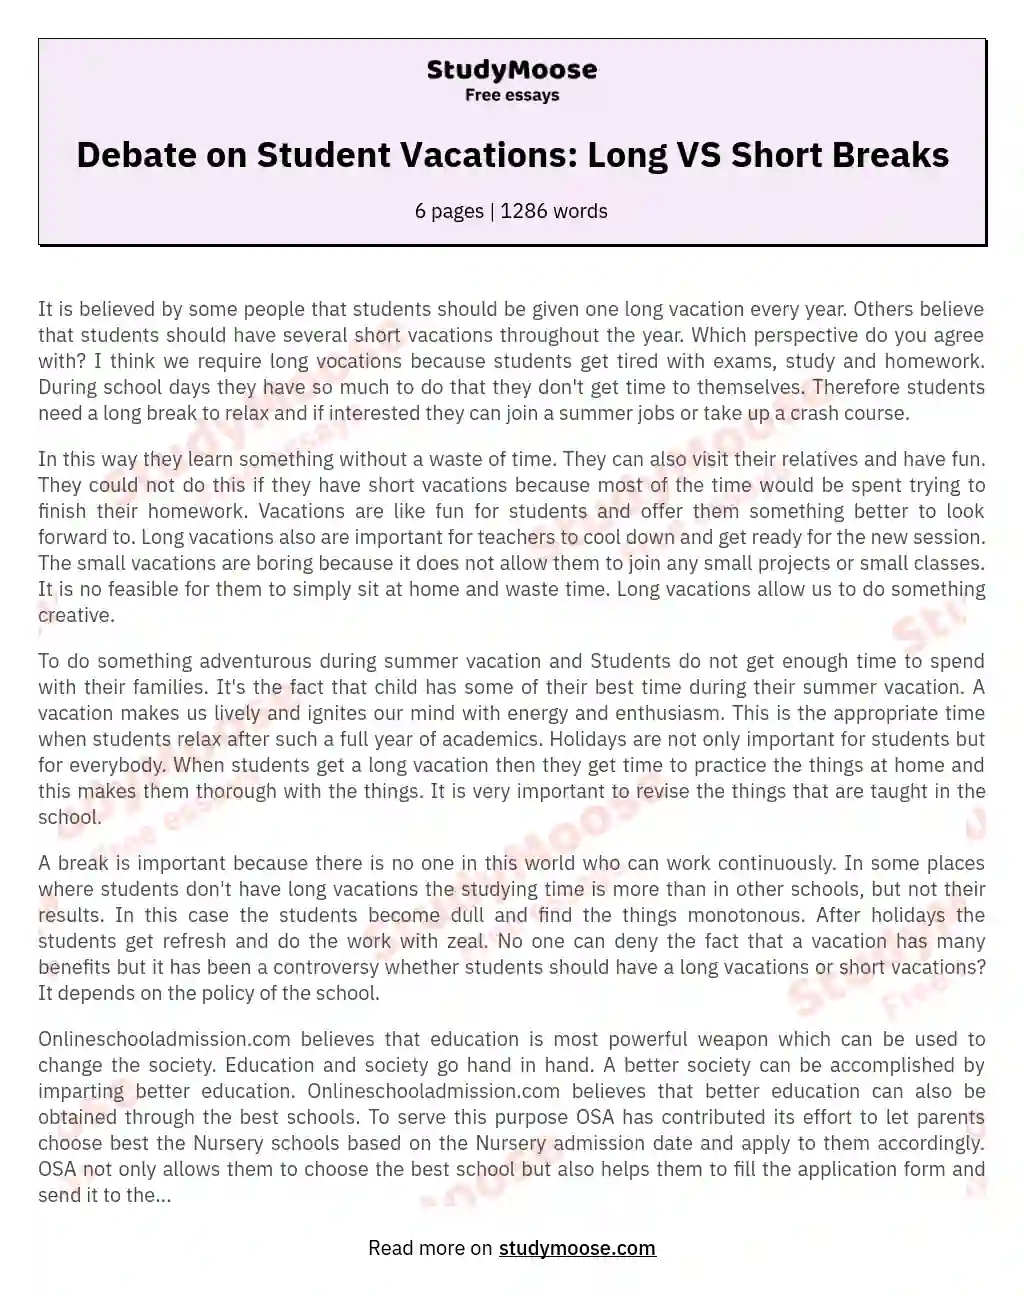 Debate on Student Vacations: Long VS Short Breaks essay